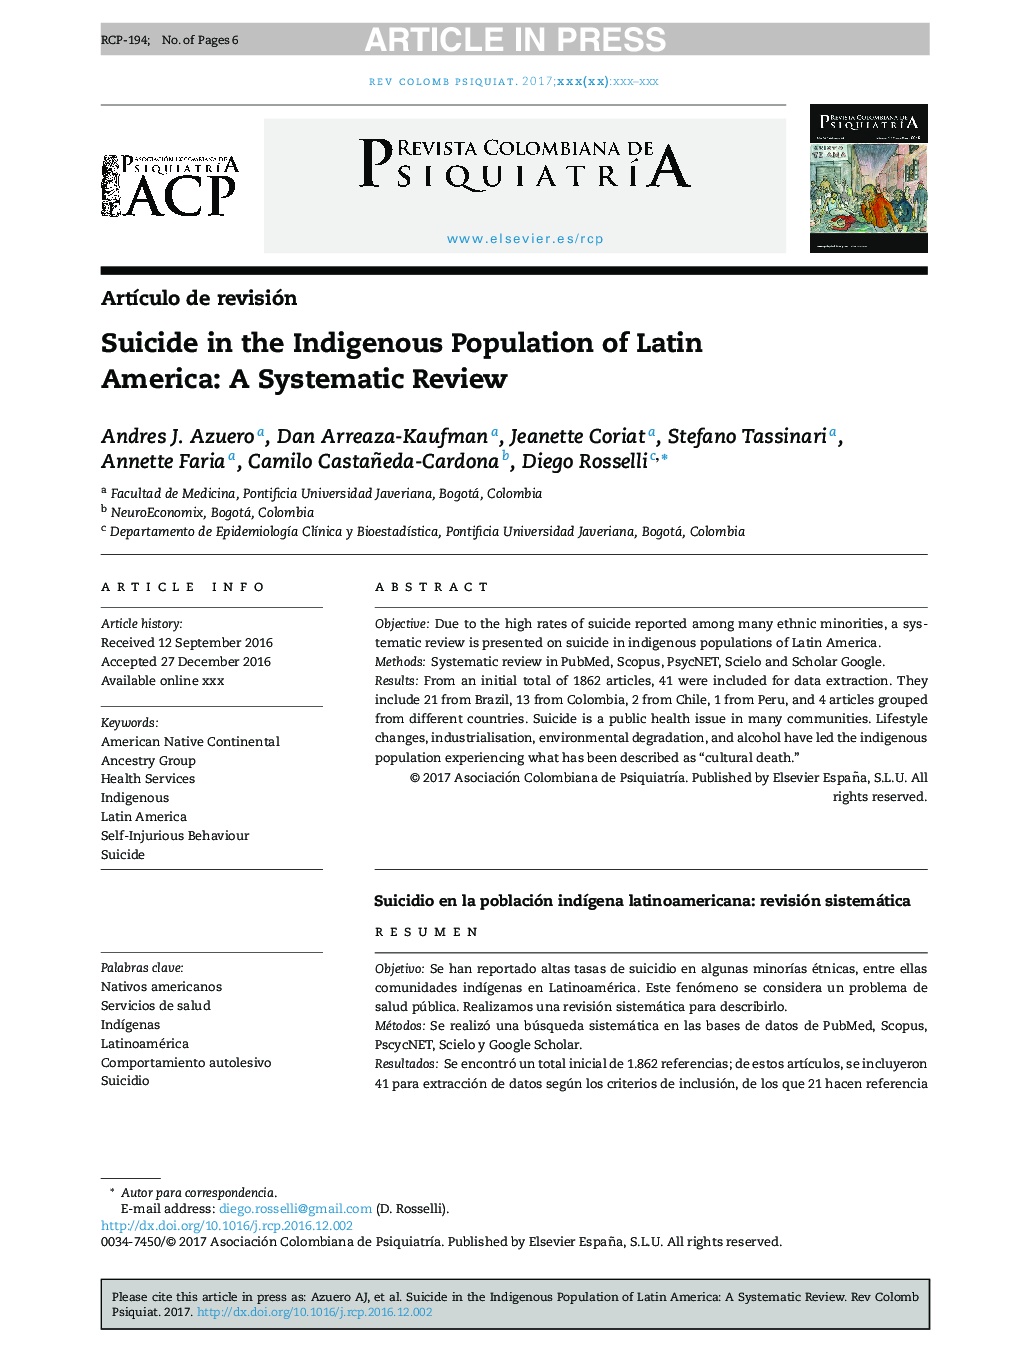 خودکشی در جمعیت بومی آمریکای لاتین: یک بررسی سیستماتیک 